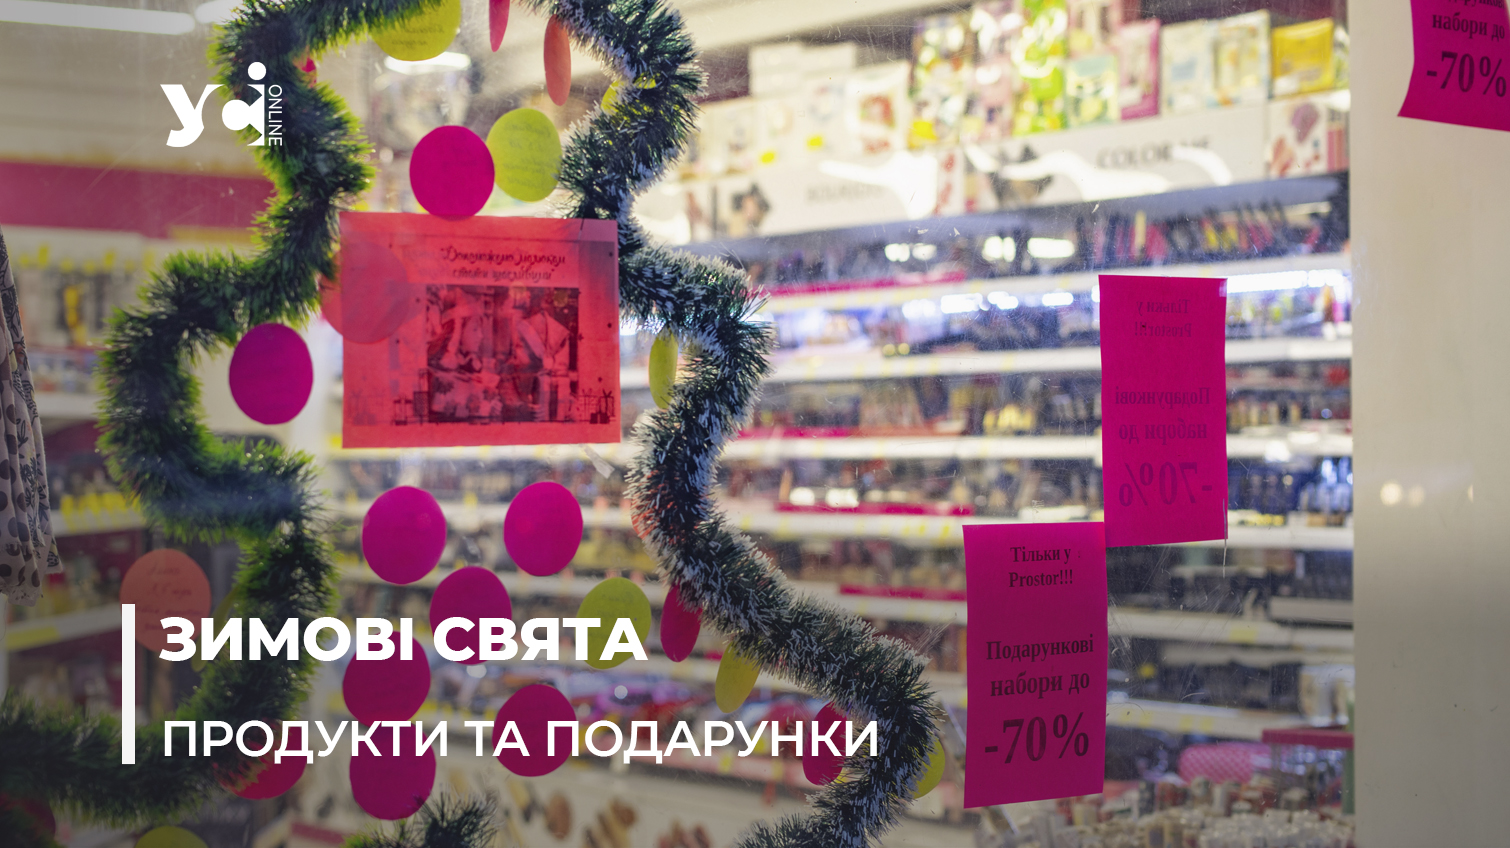 Новорічний бум у магазинах Одеси: що купують українці до свят «фото»